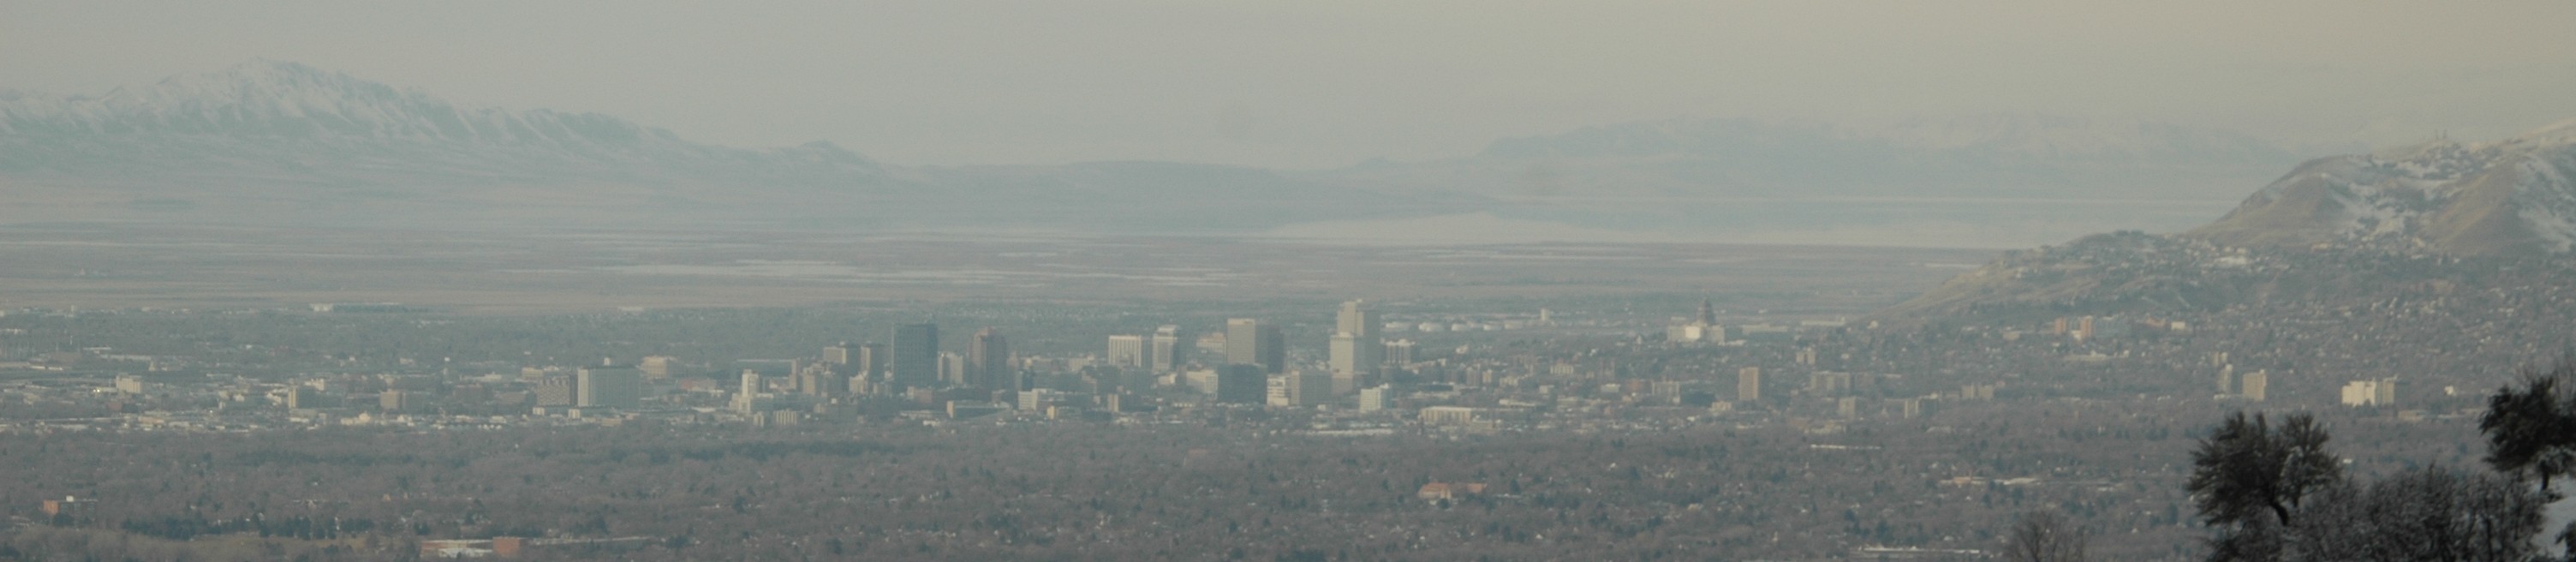 Panorama of Salt Lake